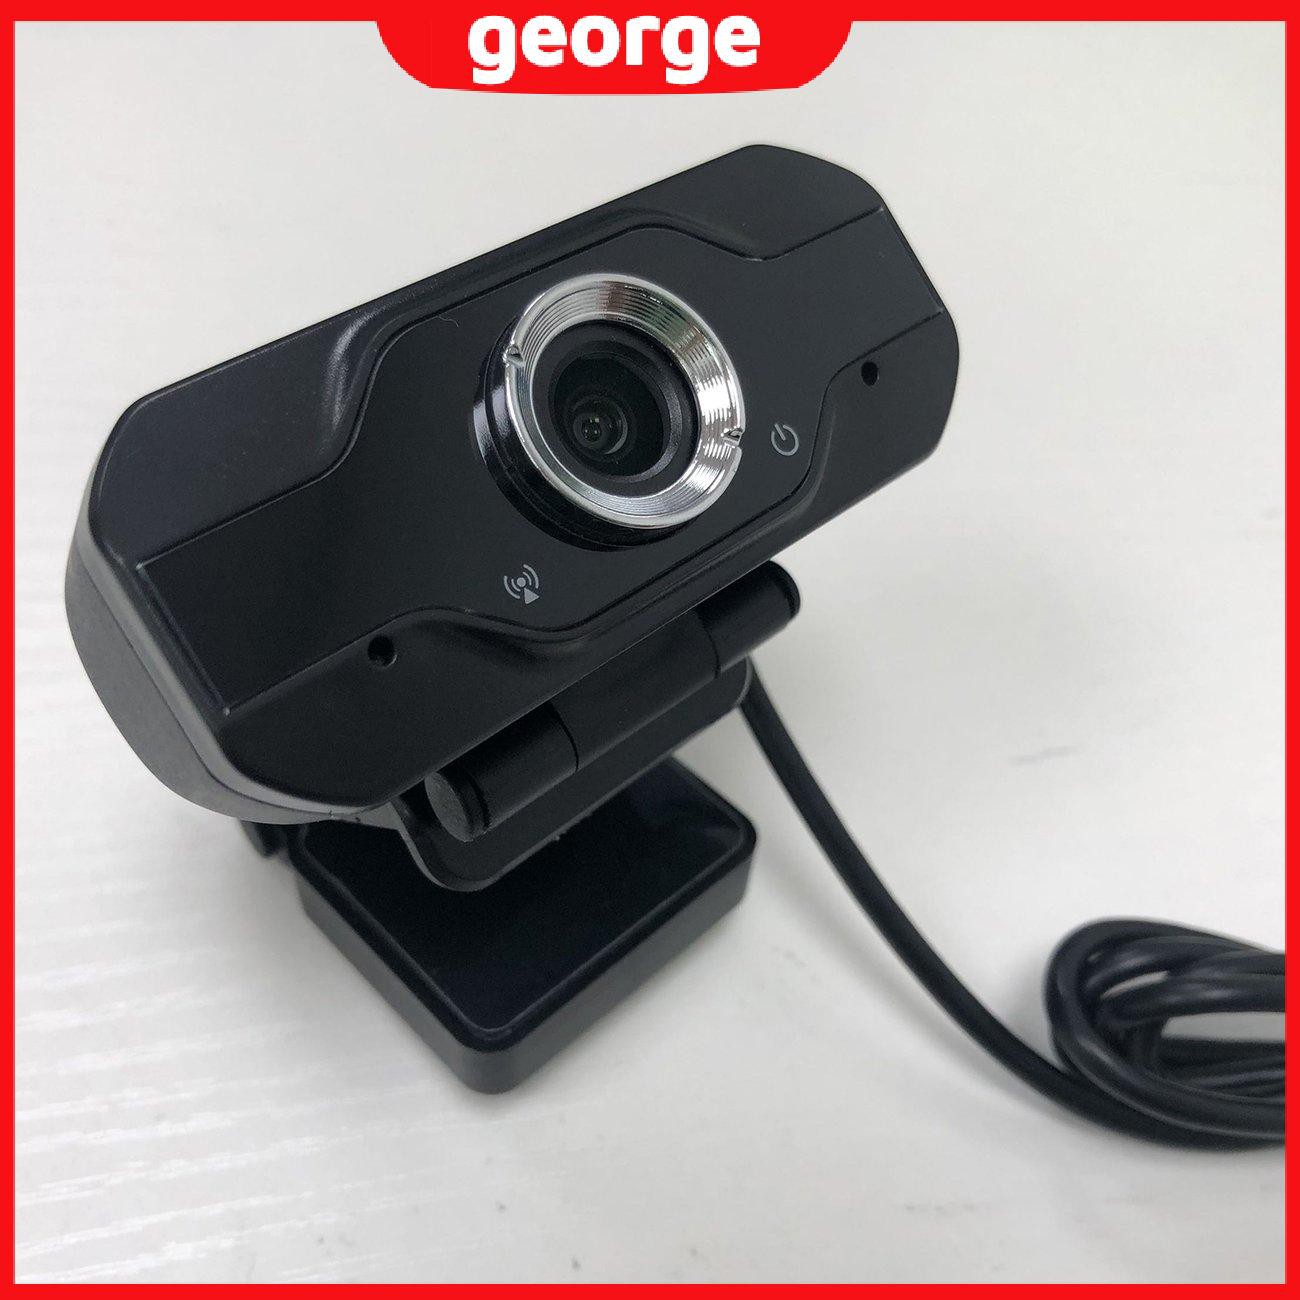 Webcam 1080p Hd Tự Cân Bằng Có Ống Kính Màu Trắng Kèm Micro Hỗ Trợ Giảng Dạy